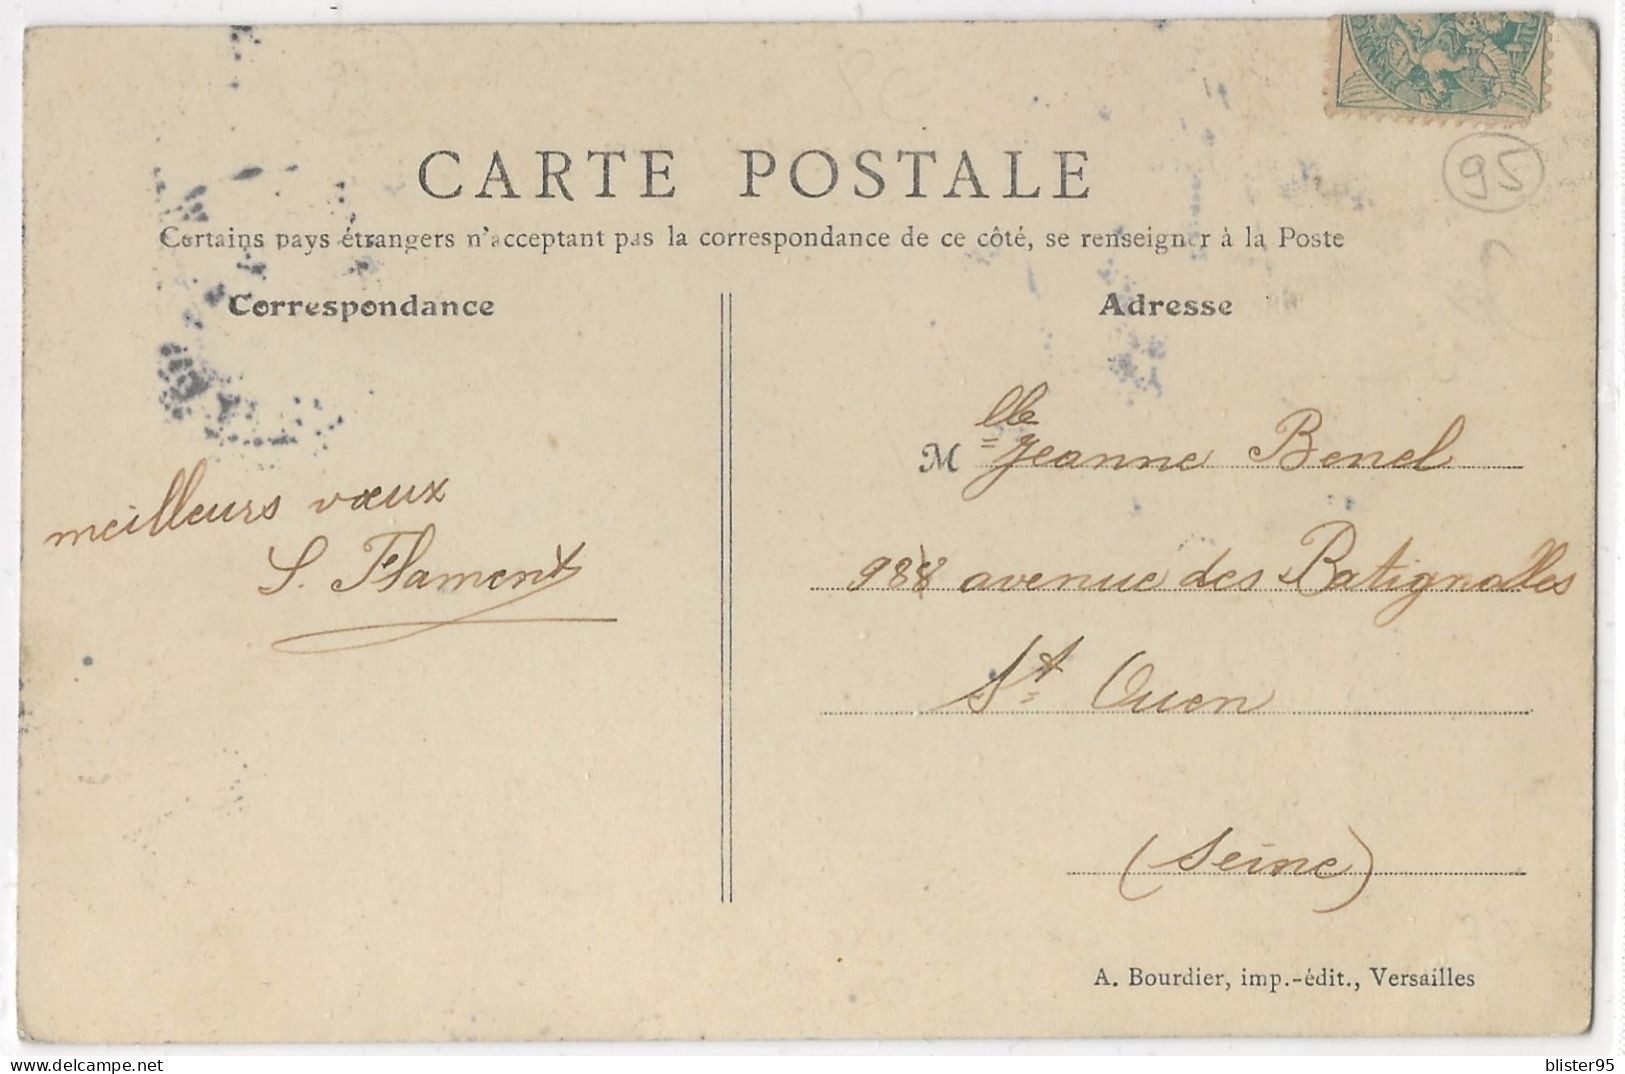 Entrée D Eragny (95) Cote De La Gare , Envoyée En 1900/1910 - Eragny